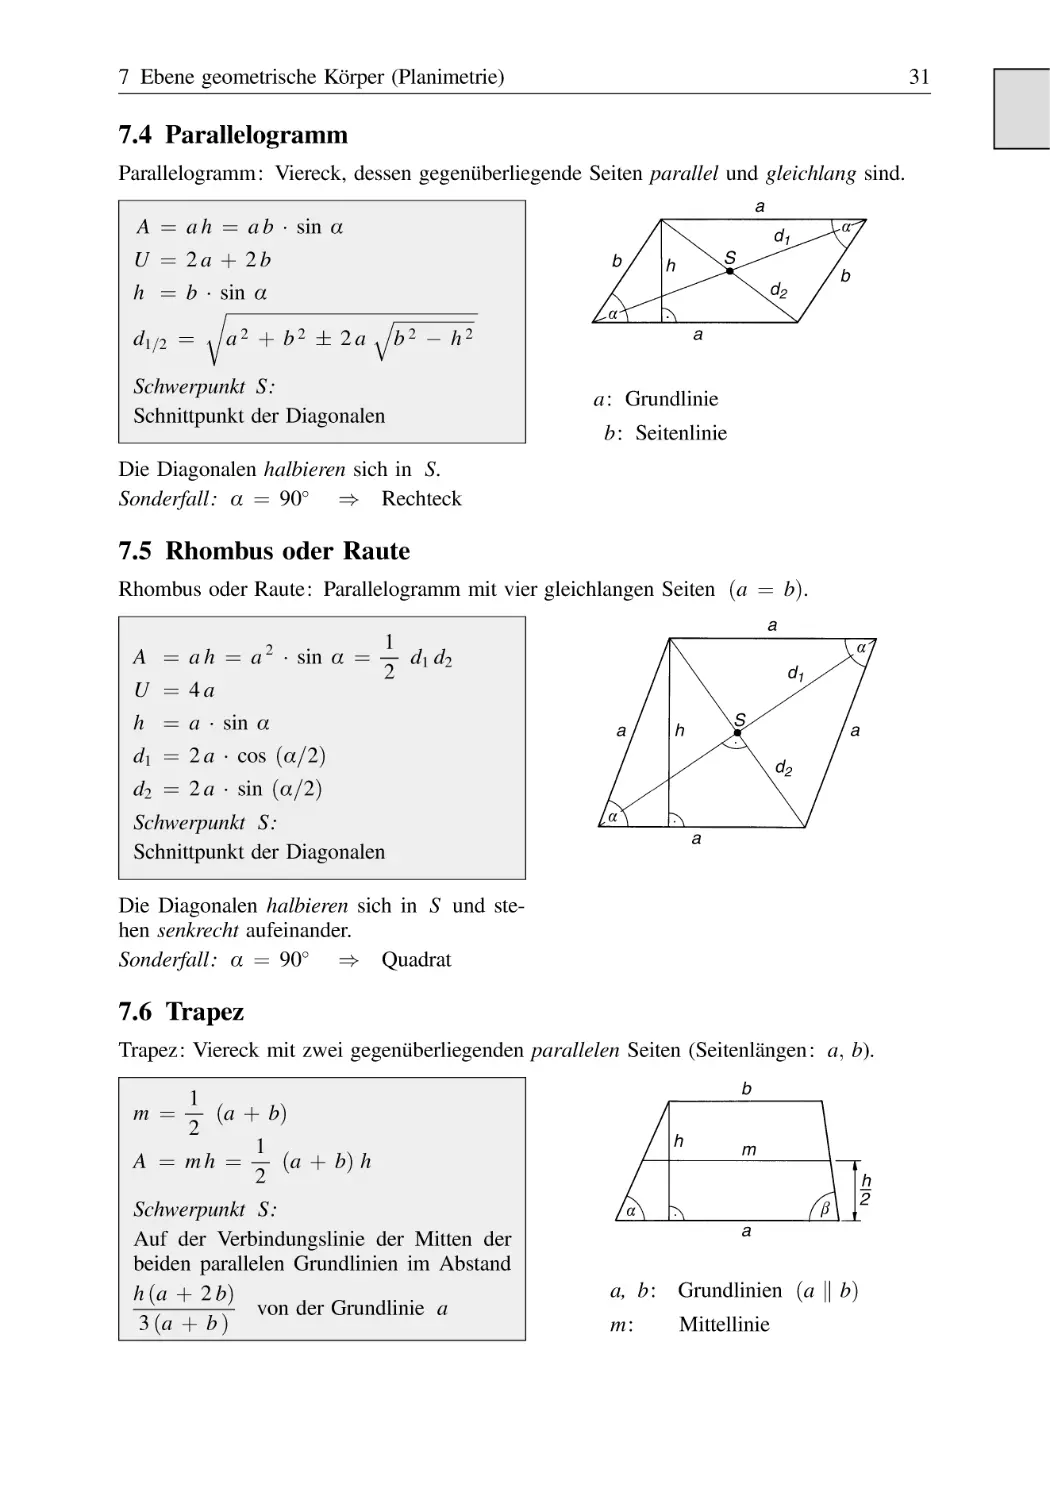 7.4 Parallelogramm
7.5 Rhombus oder Raute
7.6 Trapez